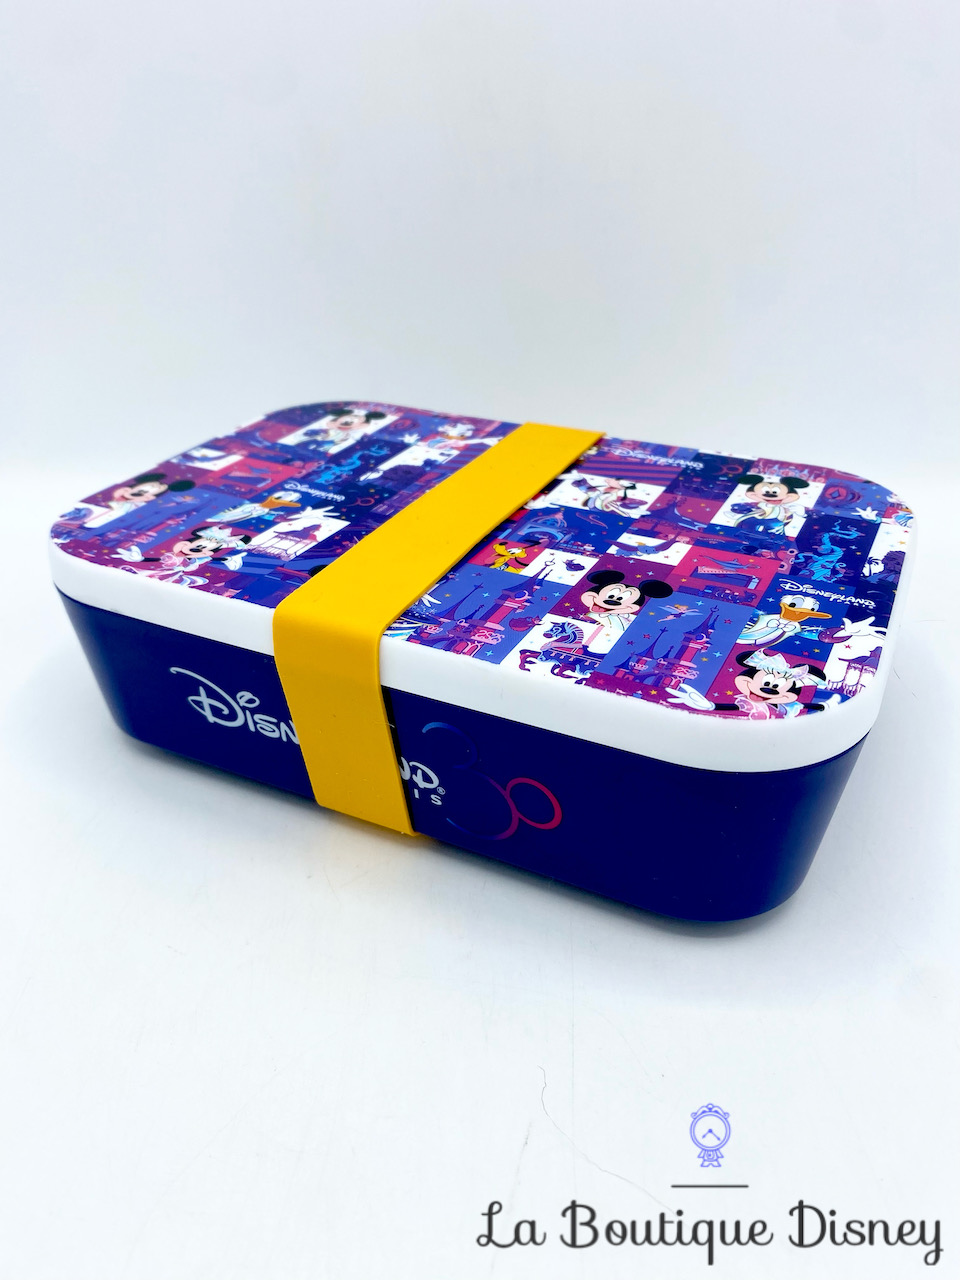 Boite repas 30 ans Disneyland Paris 30ème anniversaire plastique Disney gouter lunchbox